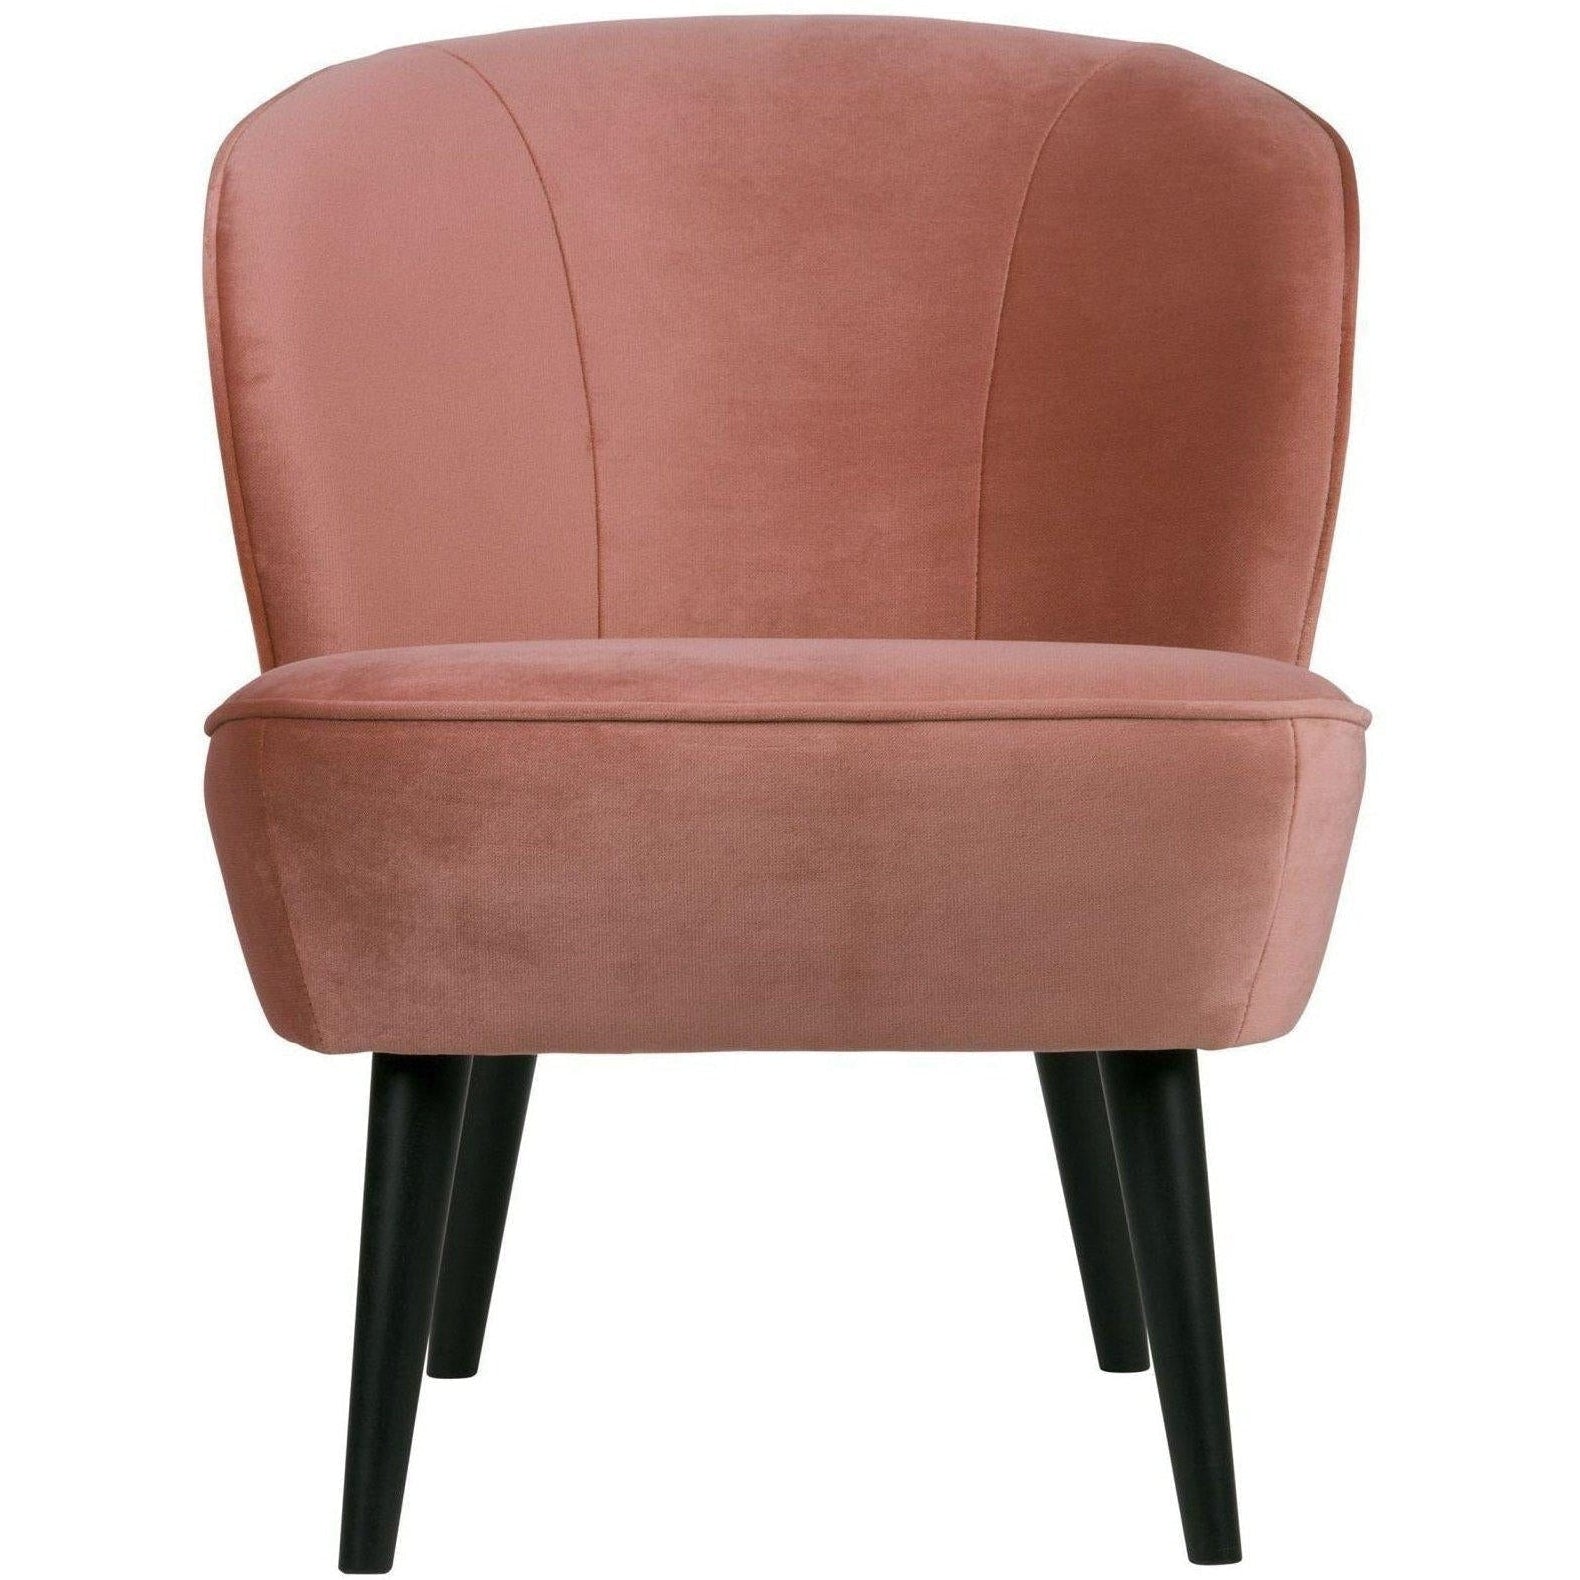 Overwegen elf aanplakbiljet Woood Sara fauteuil fluweel Oud roze – HelloChair